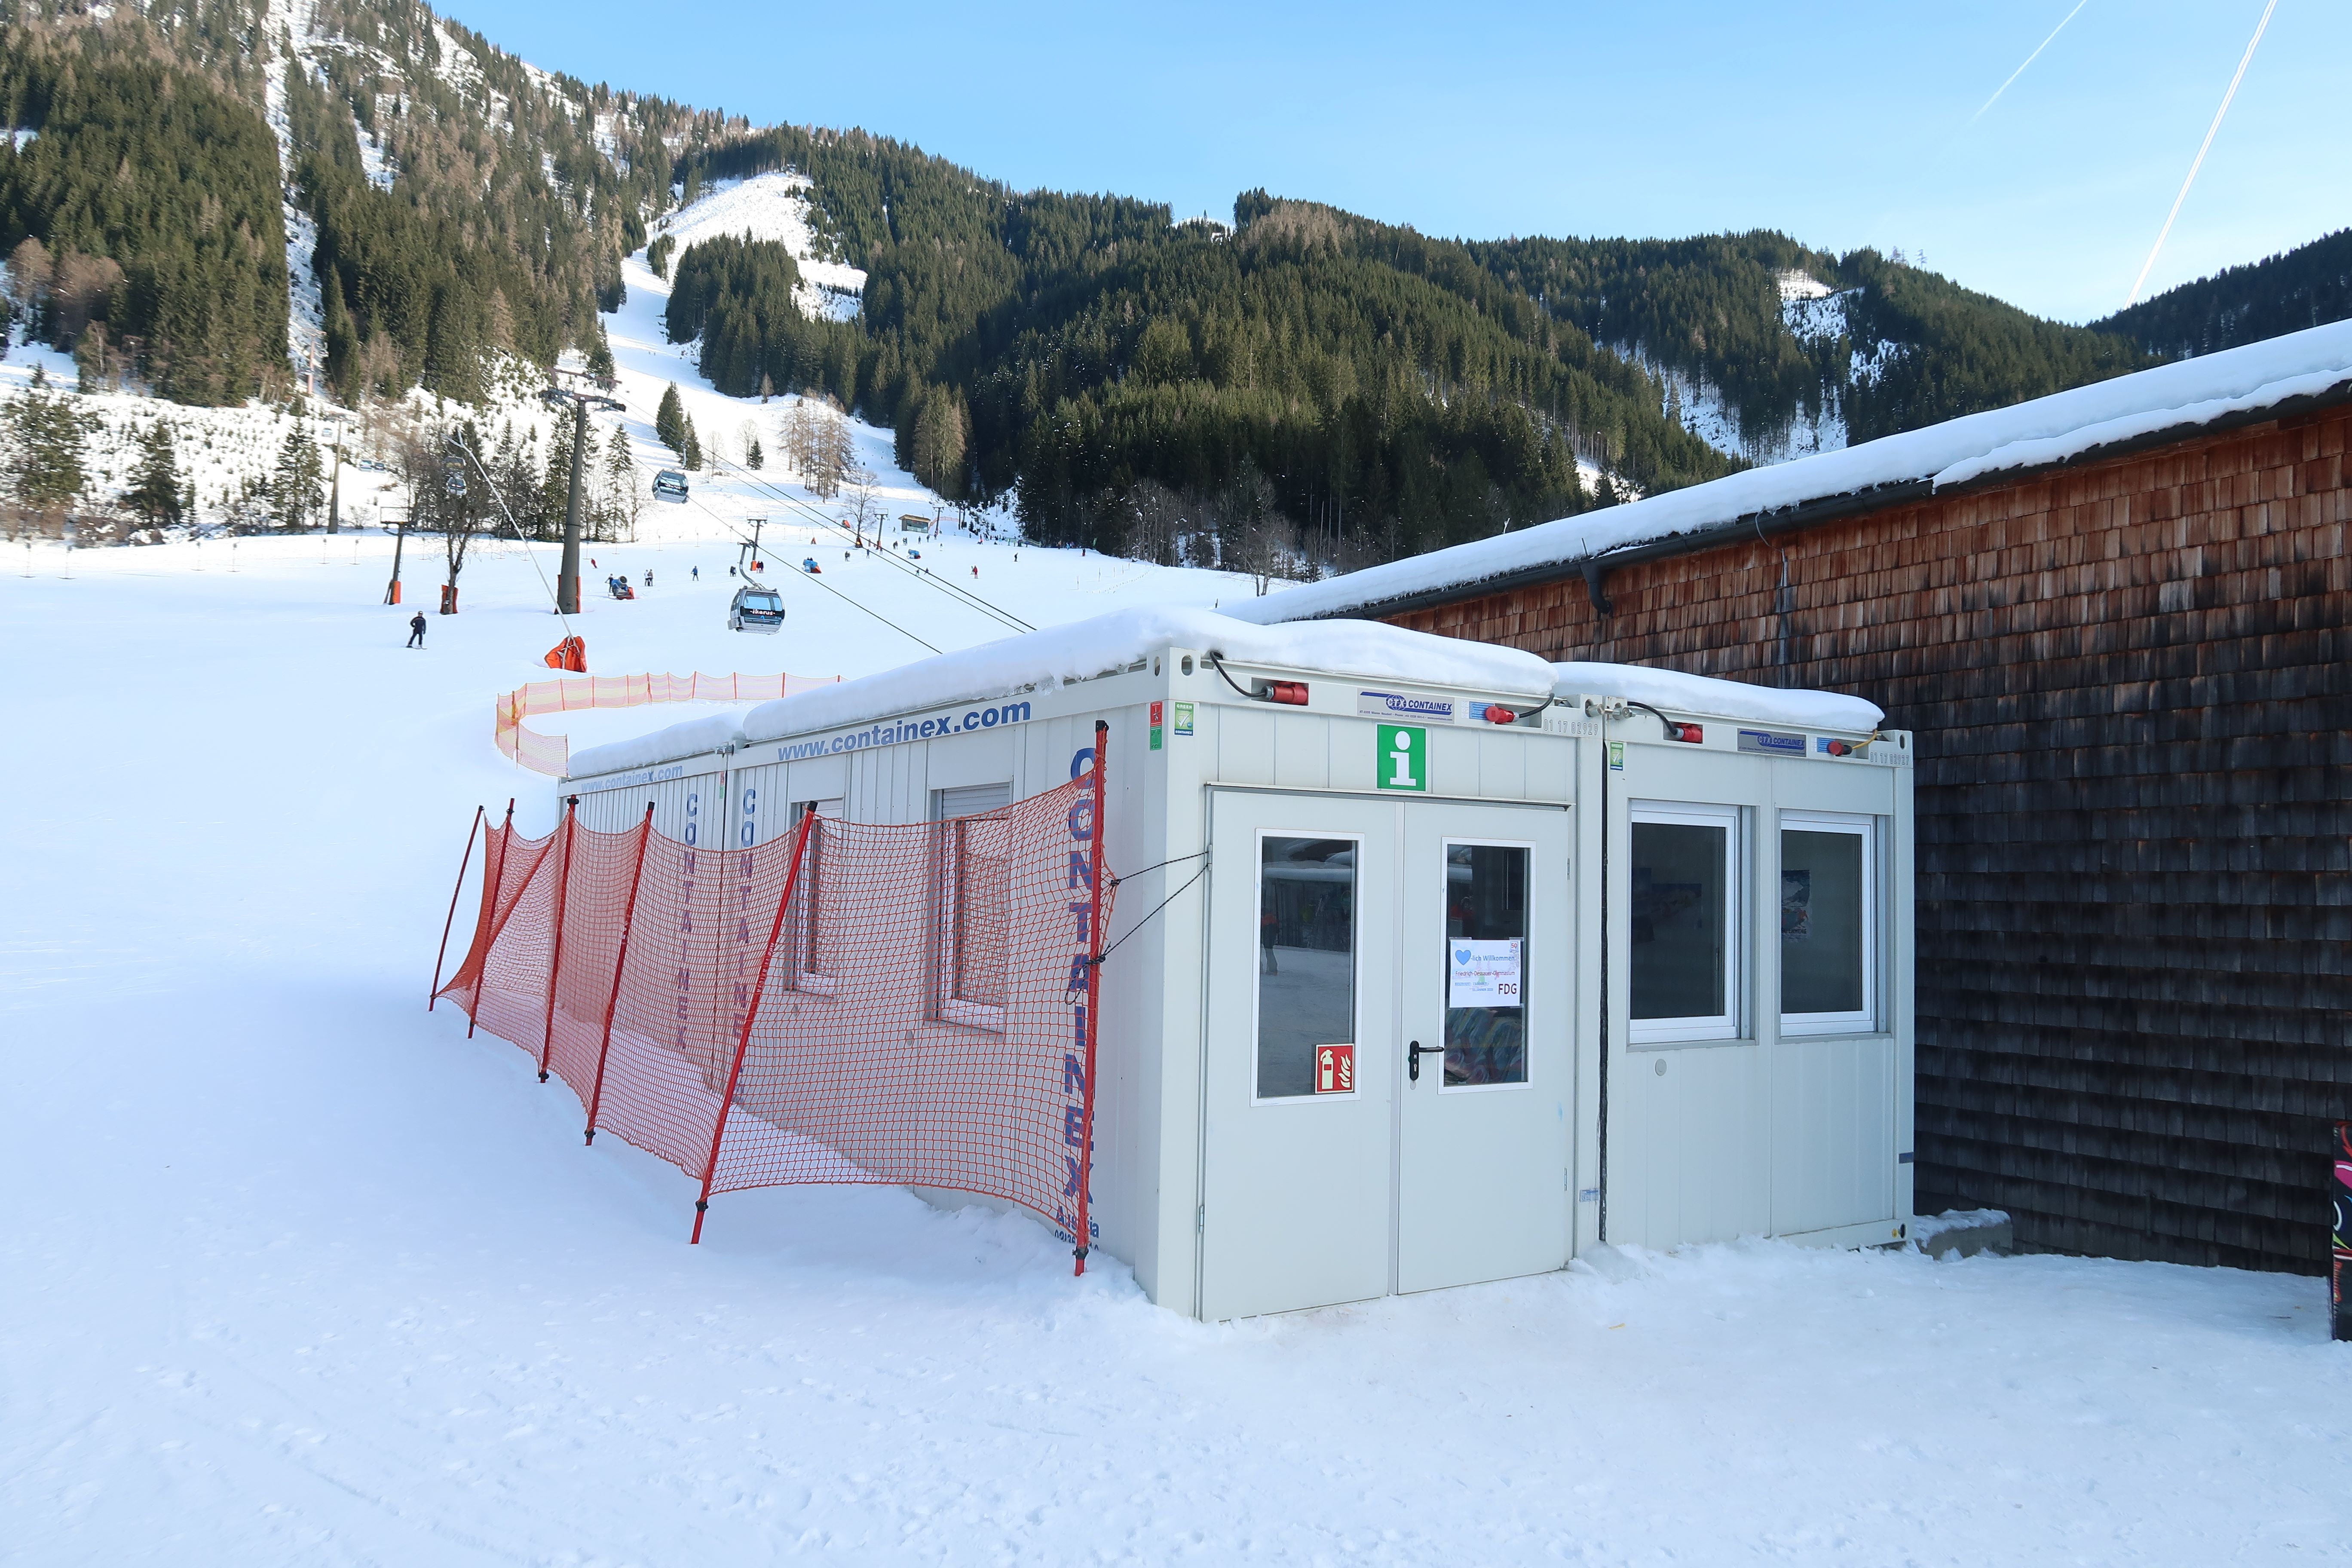 Conjunto modular como zona de uso común junto a la pista de esquí, Werfenweng (Austria)